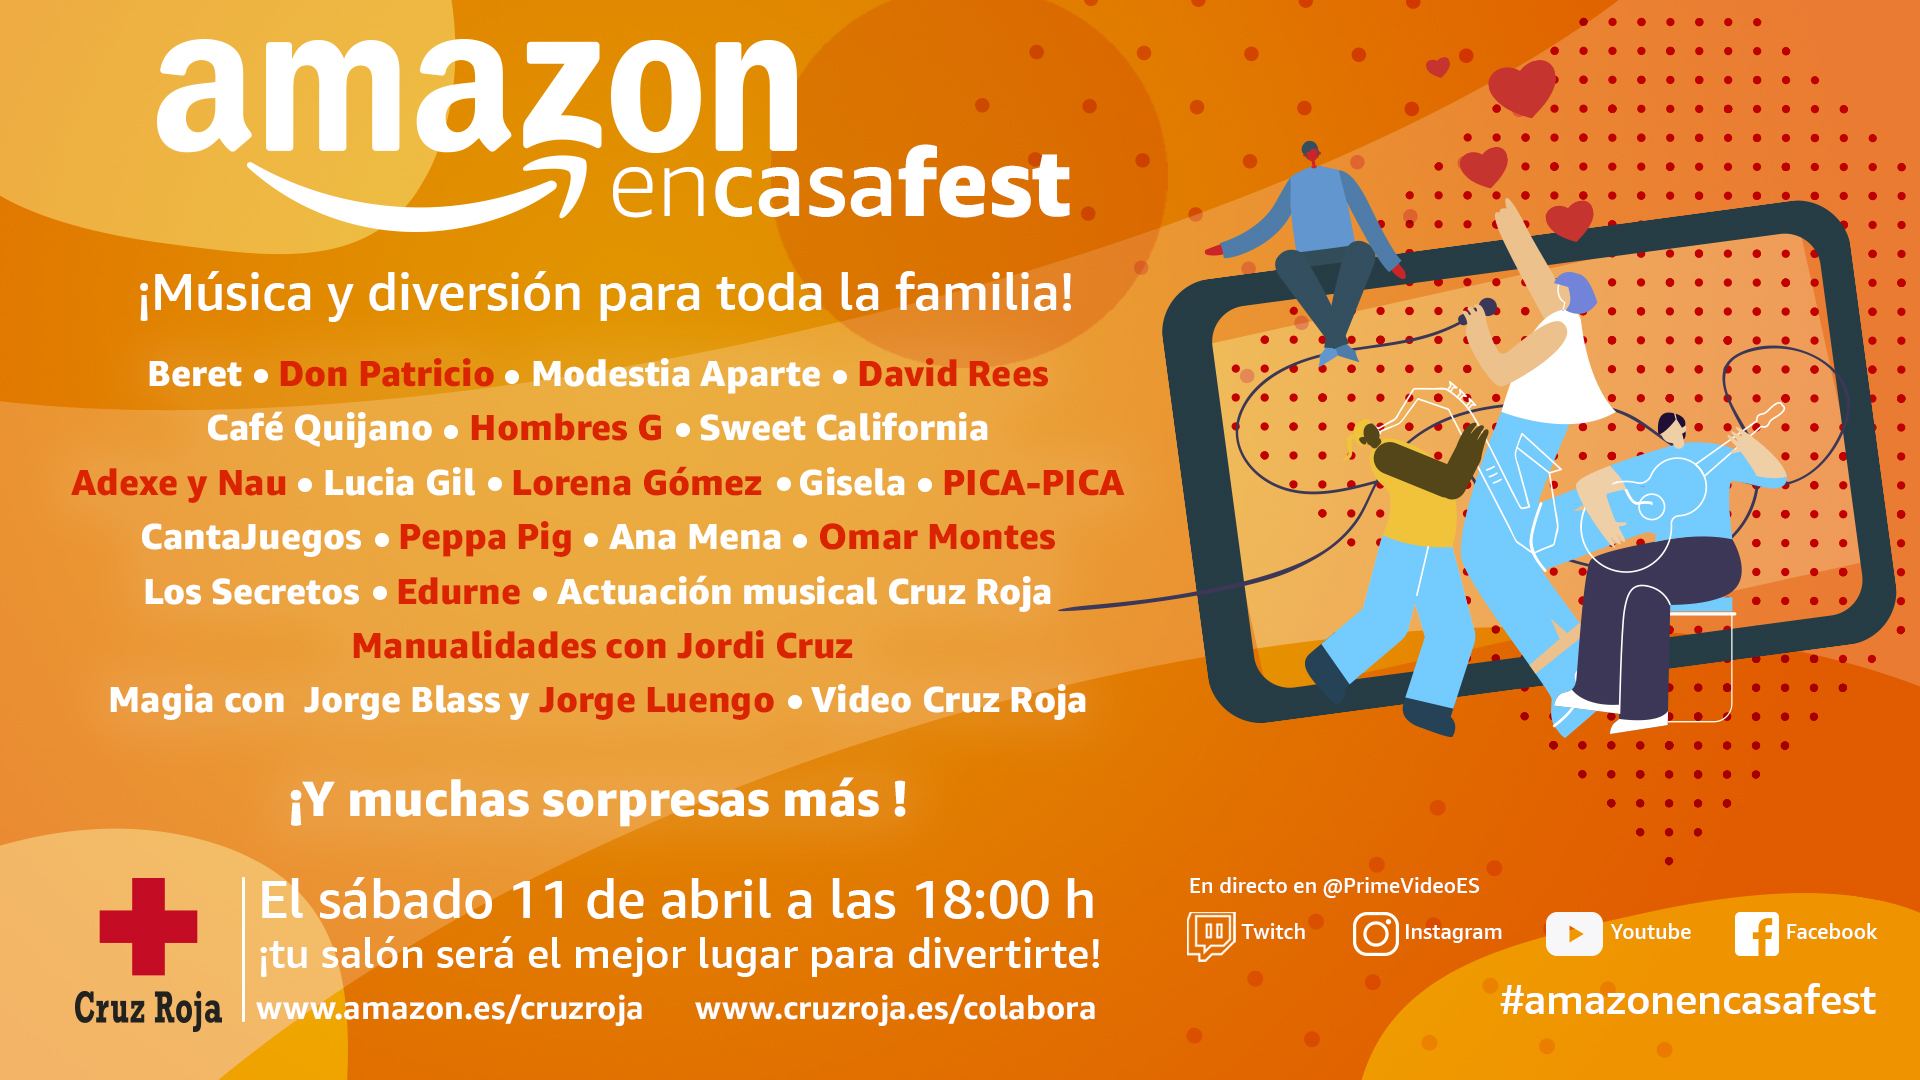 Amazon presenta #AmazonEnCasaFest, un festival familiar para recaudar fondos a beneficio del plan Cruz Roja RESPONDE contra el COVID-19